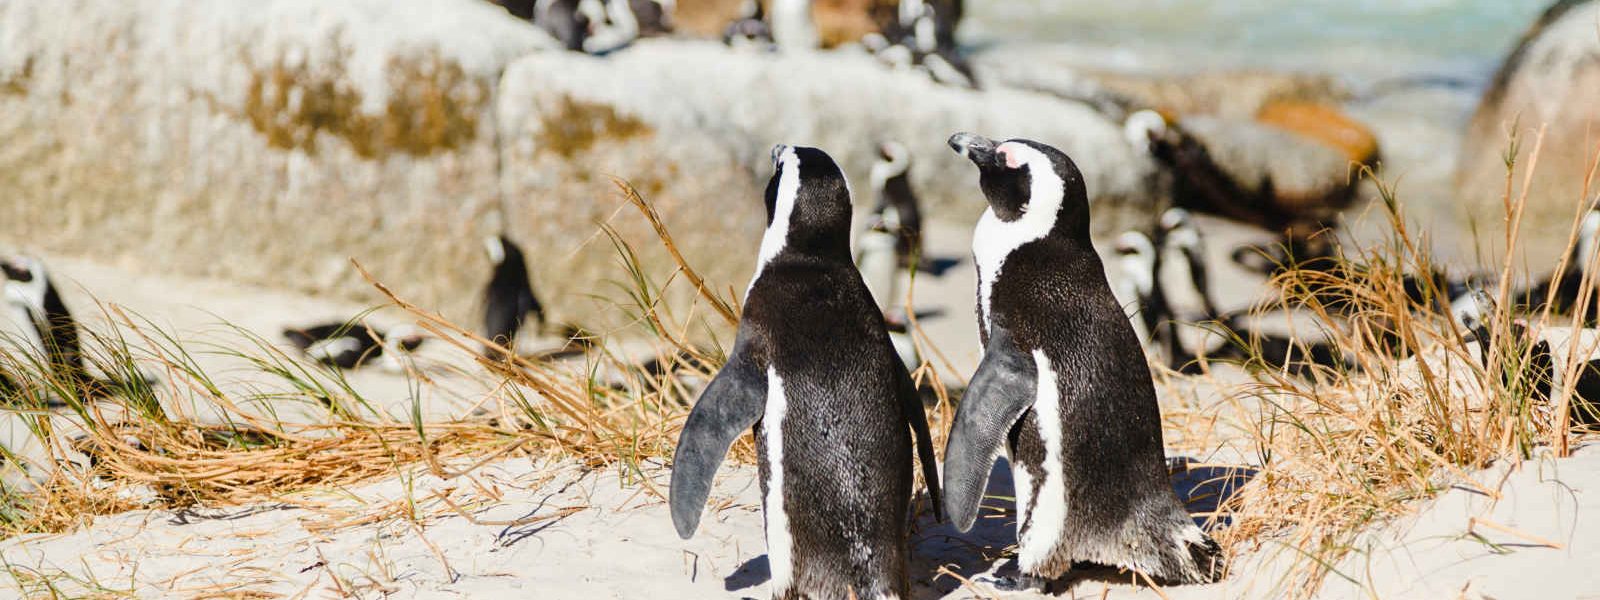 Colonie de pingouins de Boulder Beach, Afrique du Sud